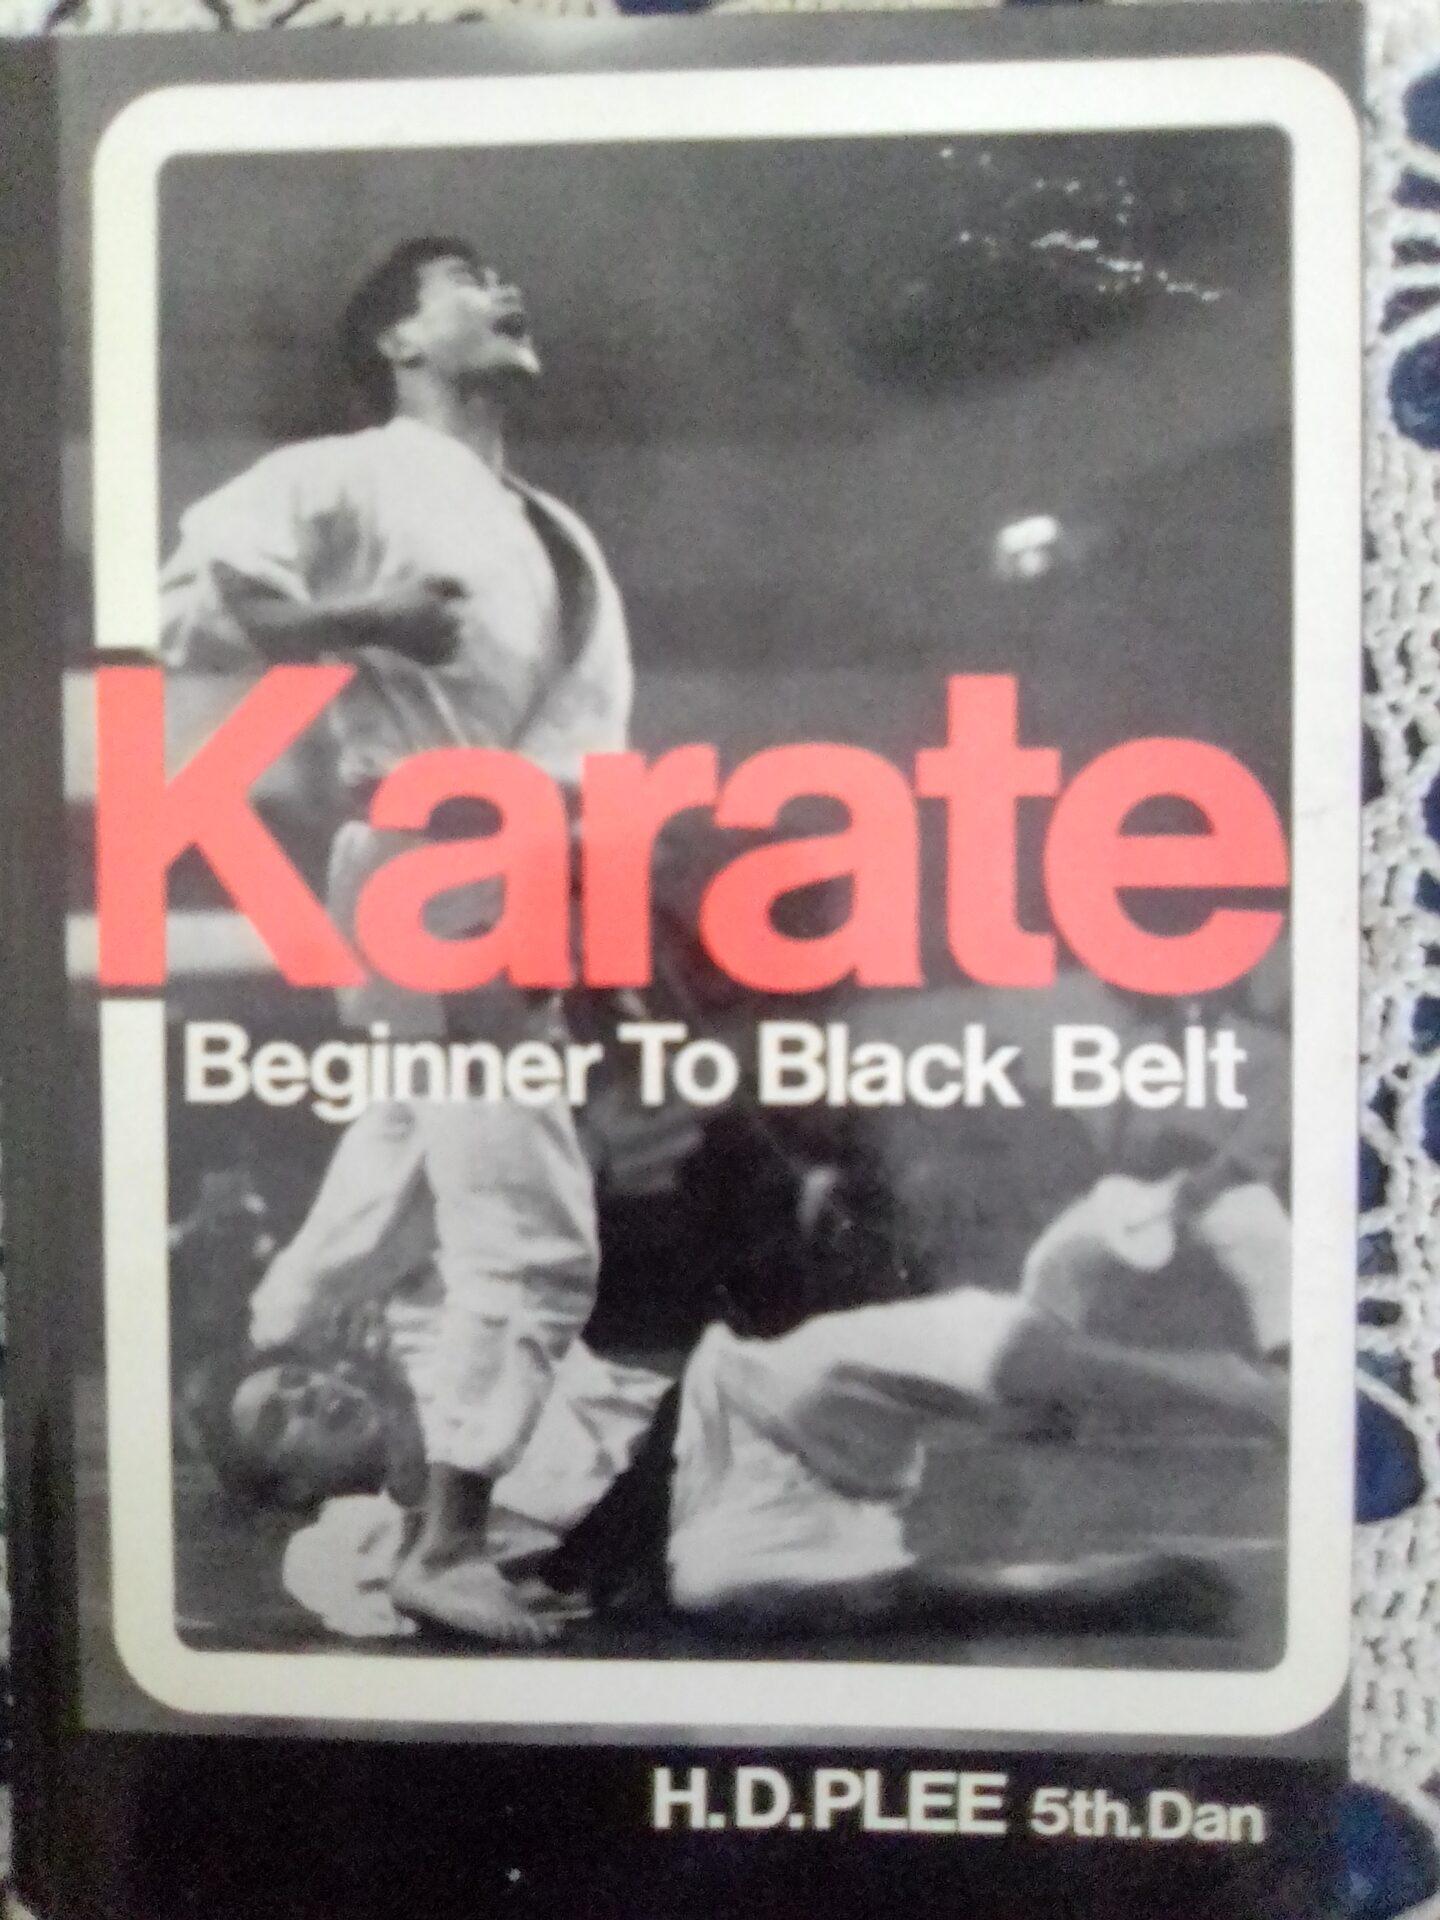 Karate – Beginner to Black Belt
by H.D PLEE.